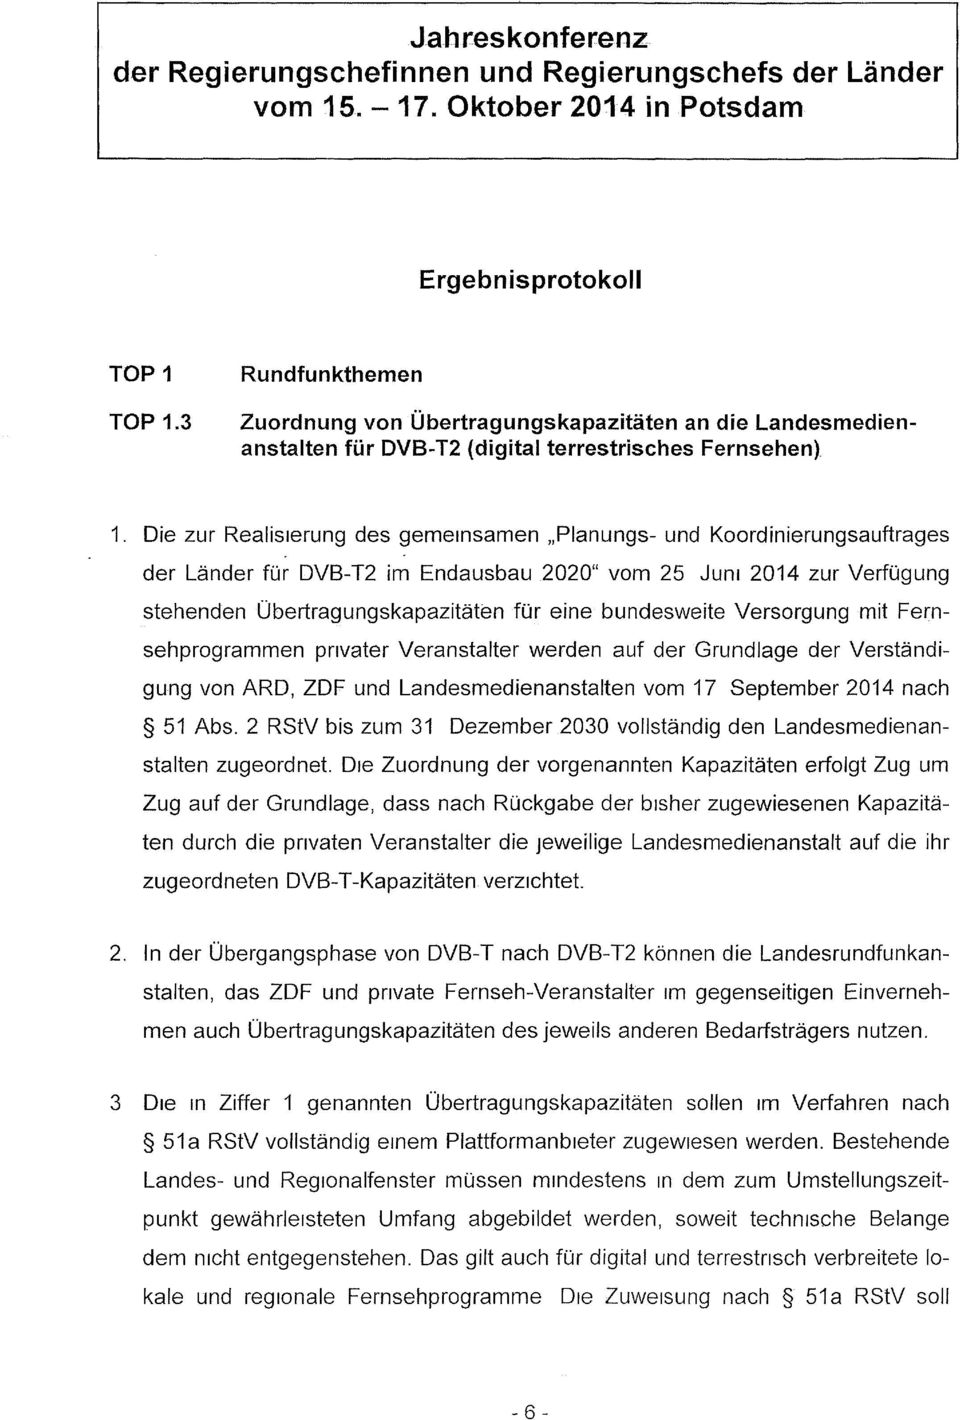 bundesweite Versorgung mit Fernsehprogrammen privater Veranstalter werden auf der Grundlage der Verständigung von ARD, ZDF und Landesmedienanstalten vom 17 September 2014 nach 51 Abs.